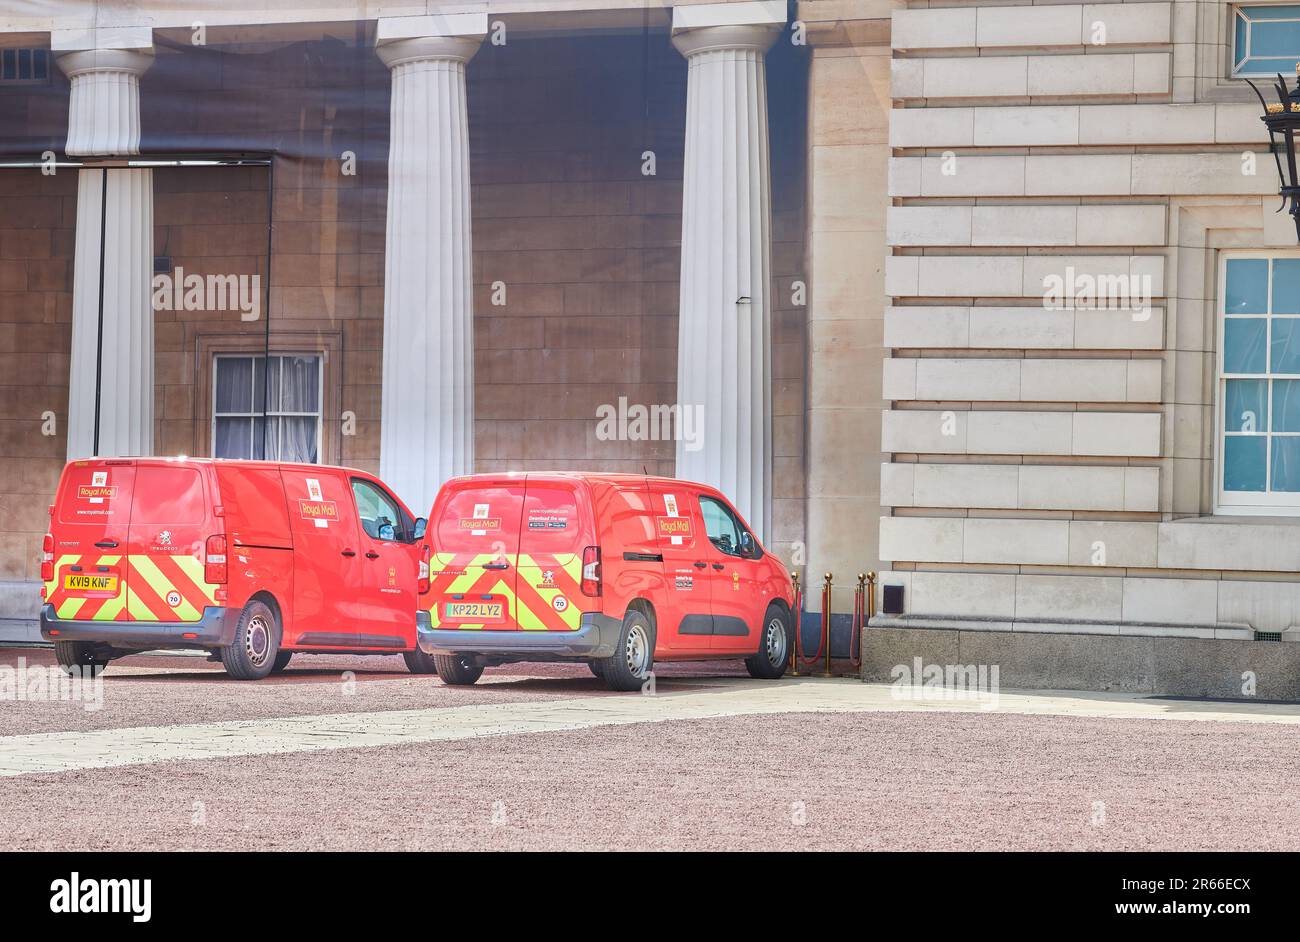 Camionnettes de poste garées dans une cour à Buckingham Palace, Londres, Angleterre. Banque D'Images